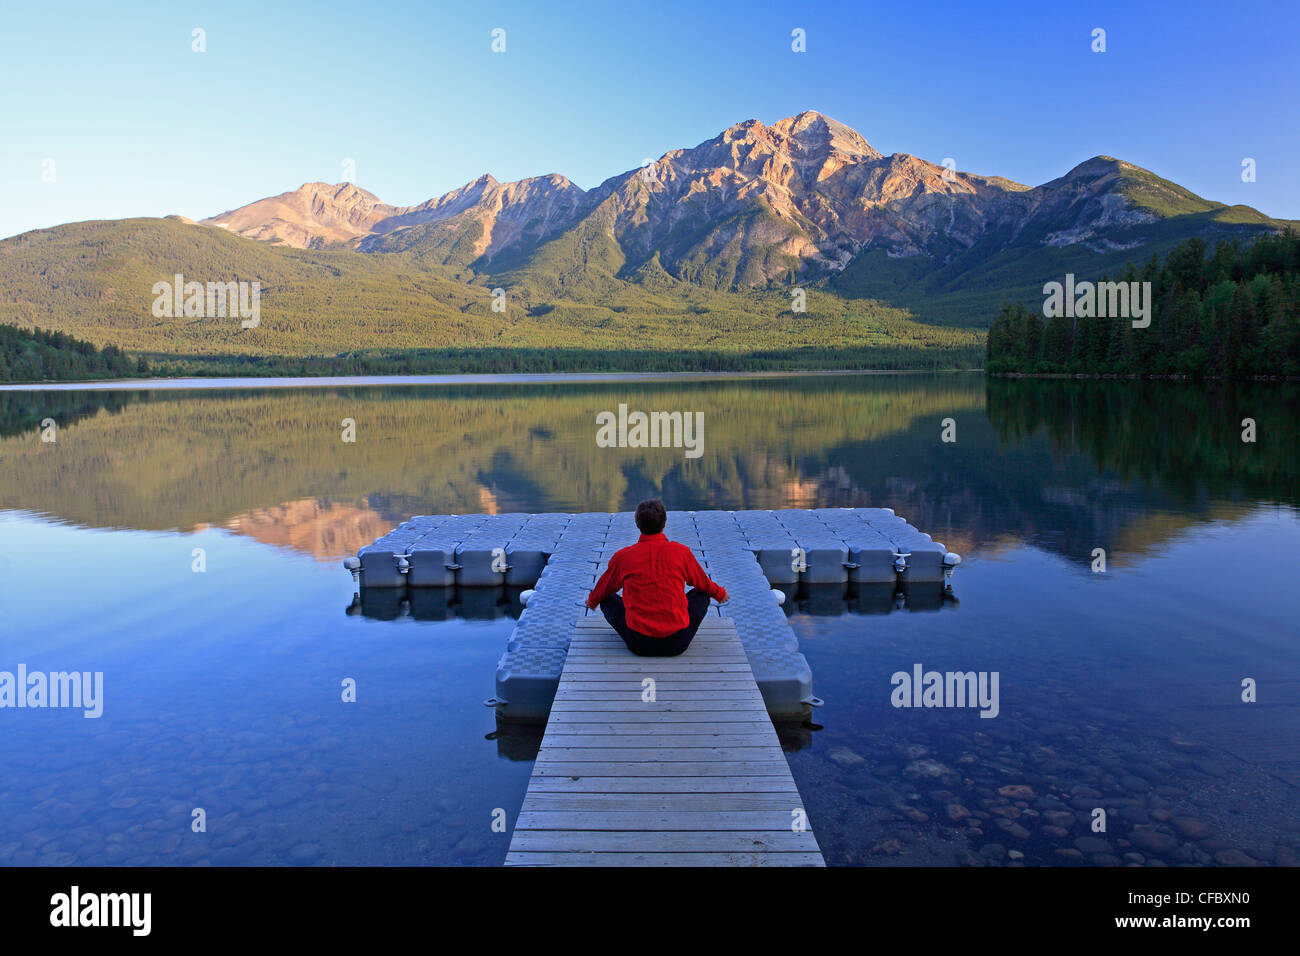 Mittleren Alters männlichen meditieren auf dock am Pyramid Lake, Jasper Nationalpark, Alberta, Kanada. Stockfoto